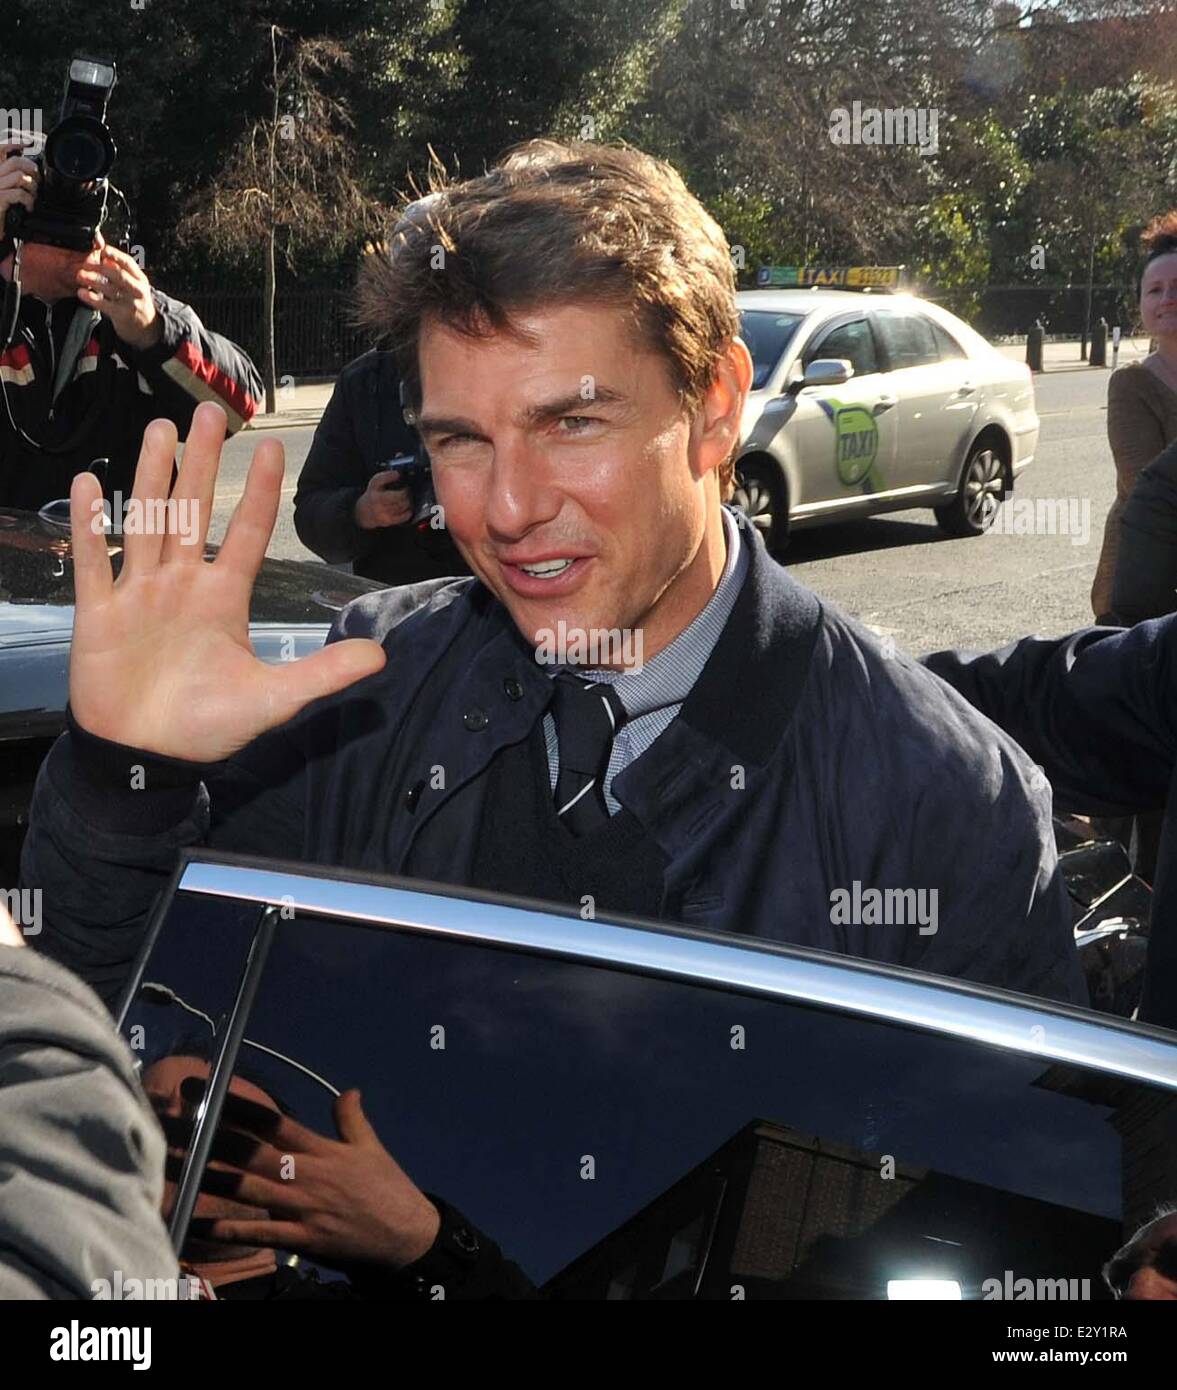 L'attore Tom Cruise è stato onorato con un ricevimento in Dublin ospitato dal dipartimento degli affari esteri e il turismo in Irlanda. Egli ha anche spento spento alla Guinness Storehouse a campione alcuni Guinness. Il suo minder era visto portando alcuni sacchi di Guinness per la sua auto da Foto Stock